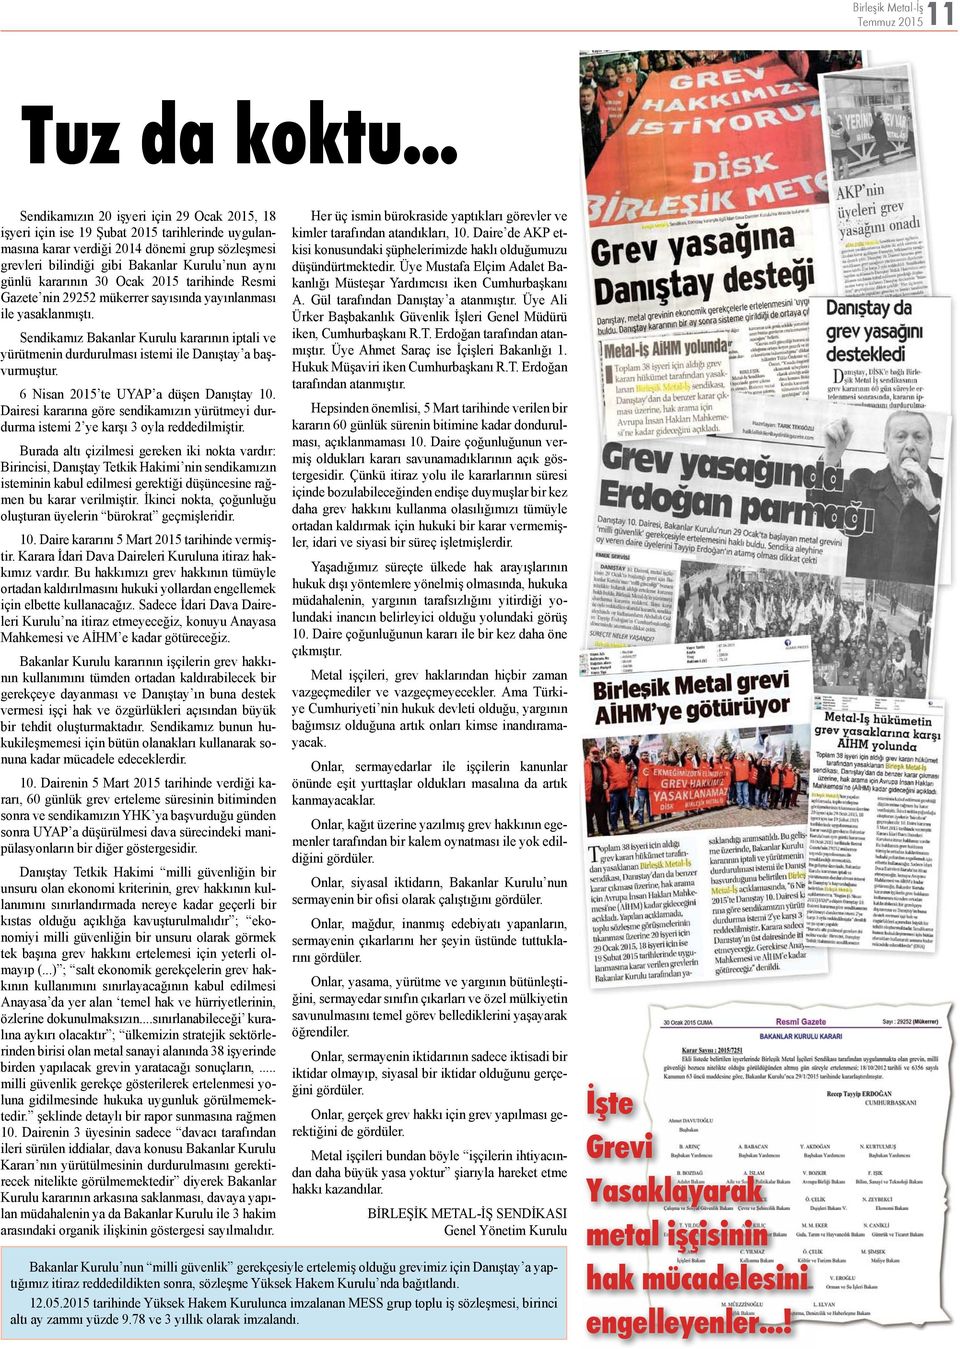 günlü kararının 30 Ocak 2015 tarihinde Resmi Gazete nin 29252 mükerrer sayısında yayınlanması ile yasaklanmıştı.